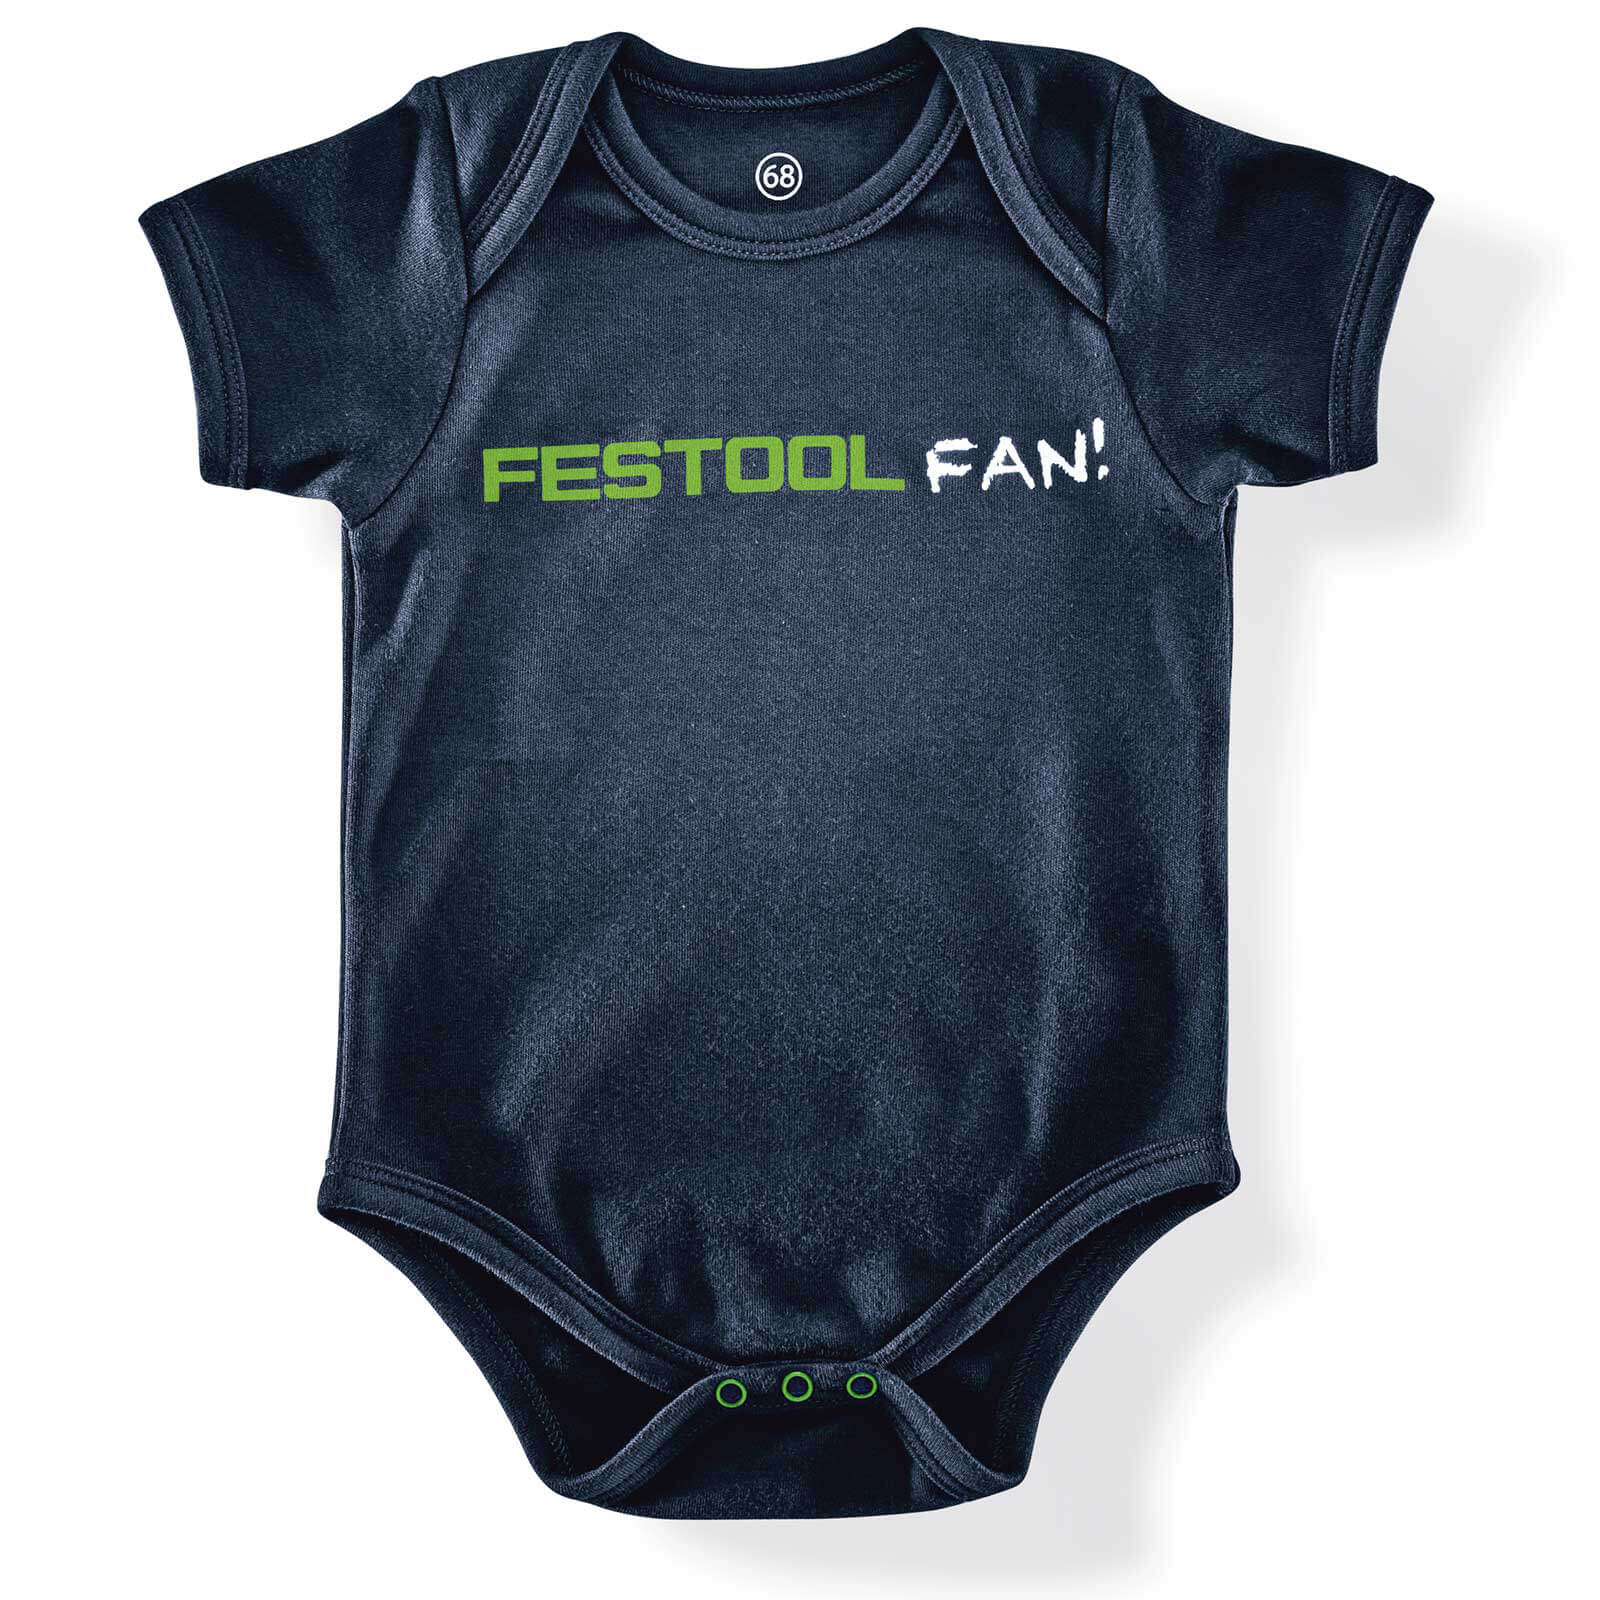 Image of Festool Fan Baby Grow